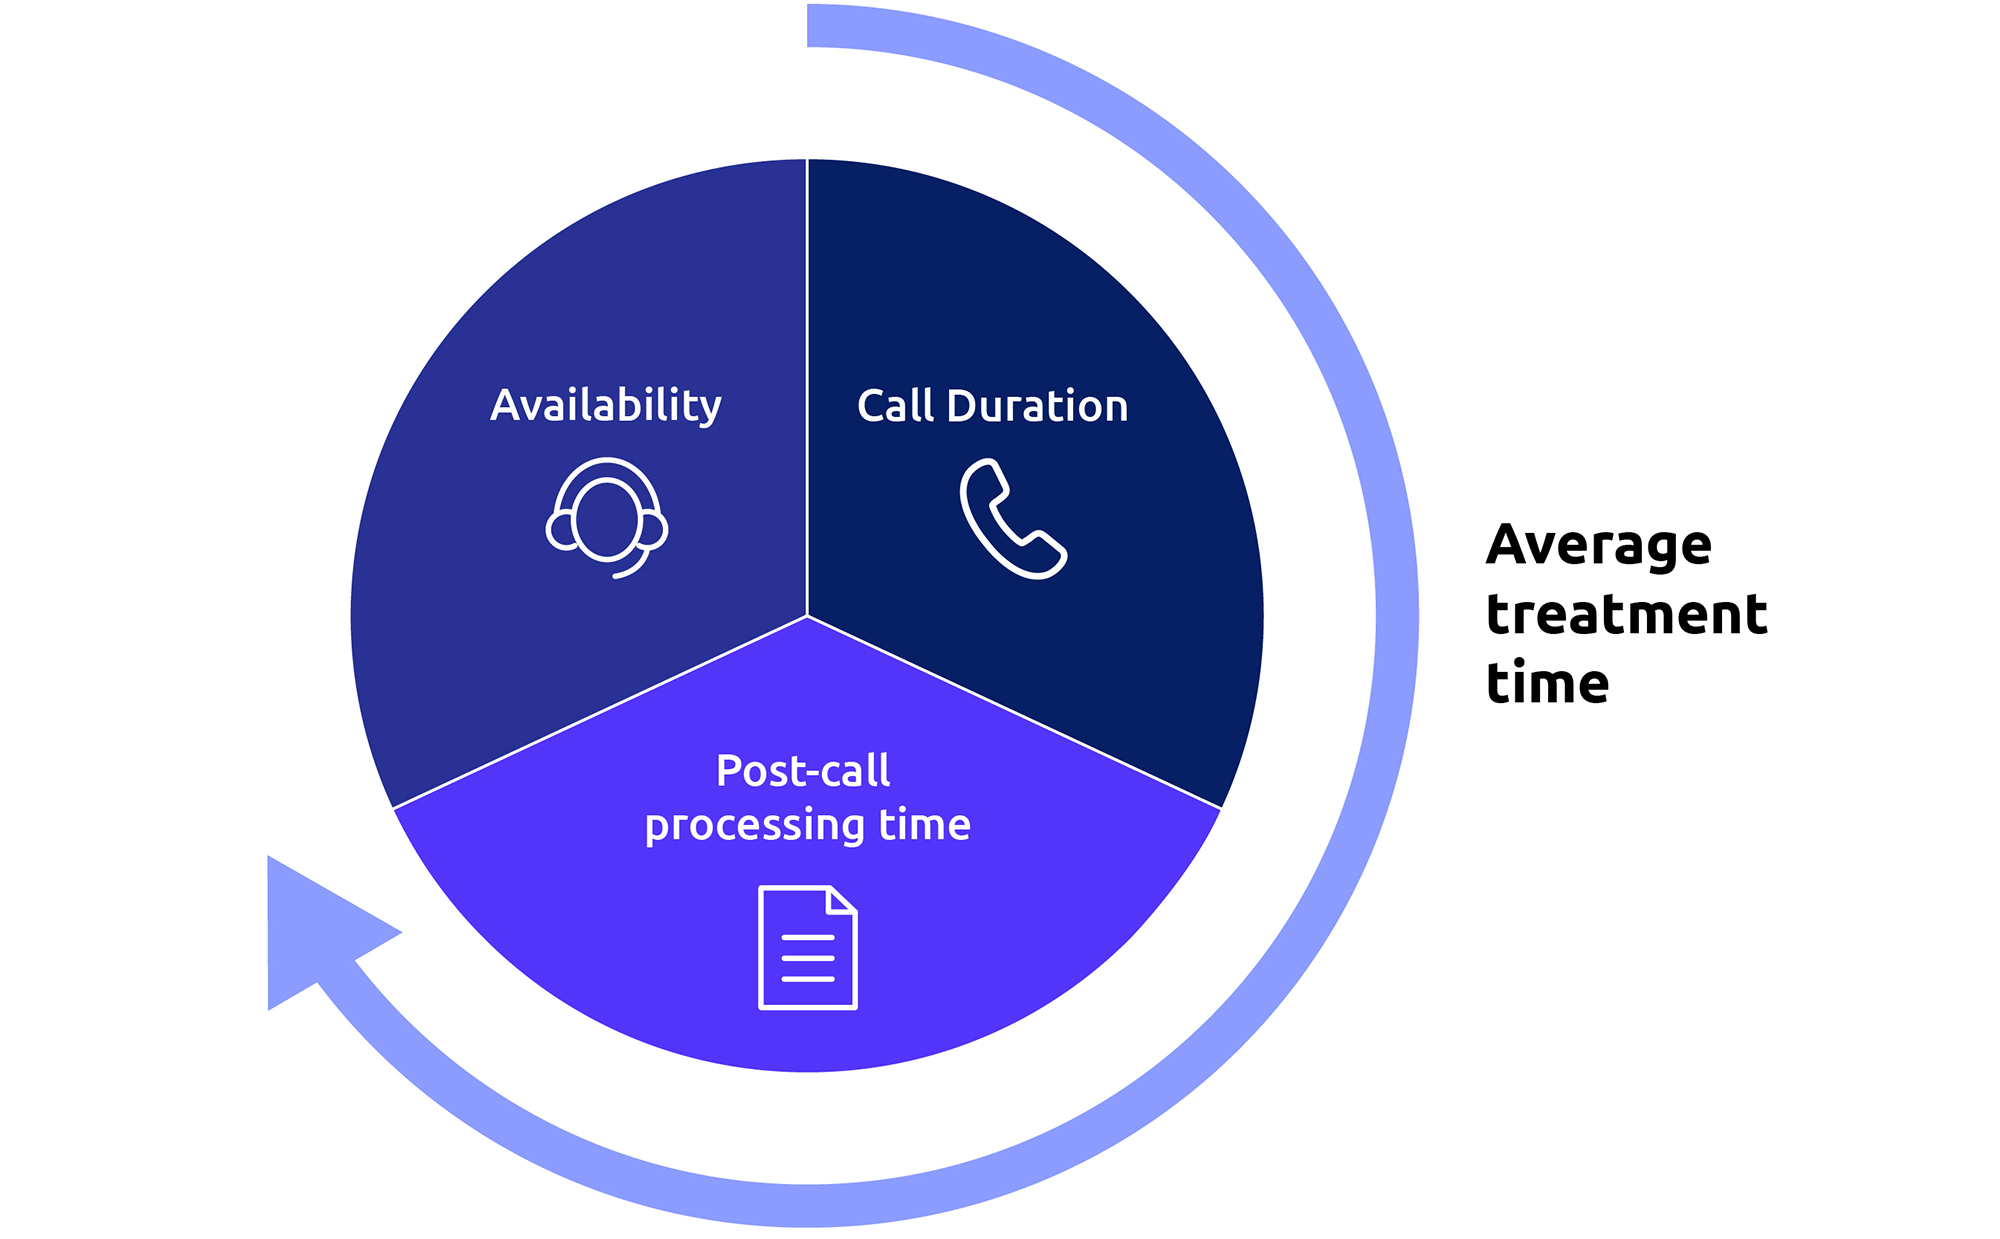 Come calcolare il tempo medio di trattamento nei call center